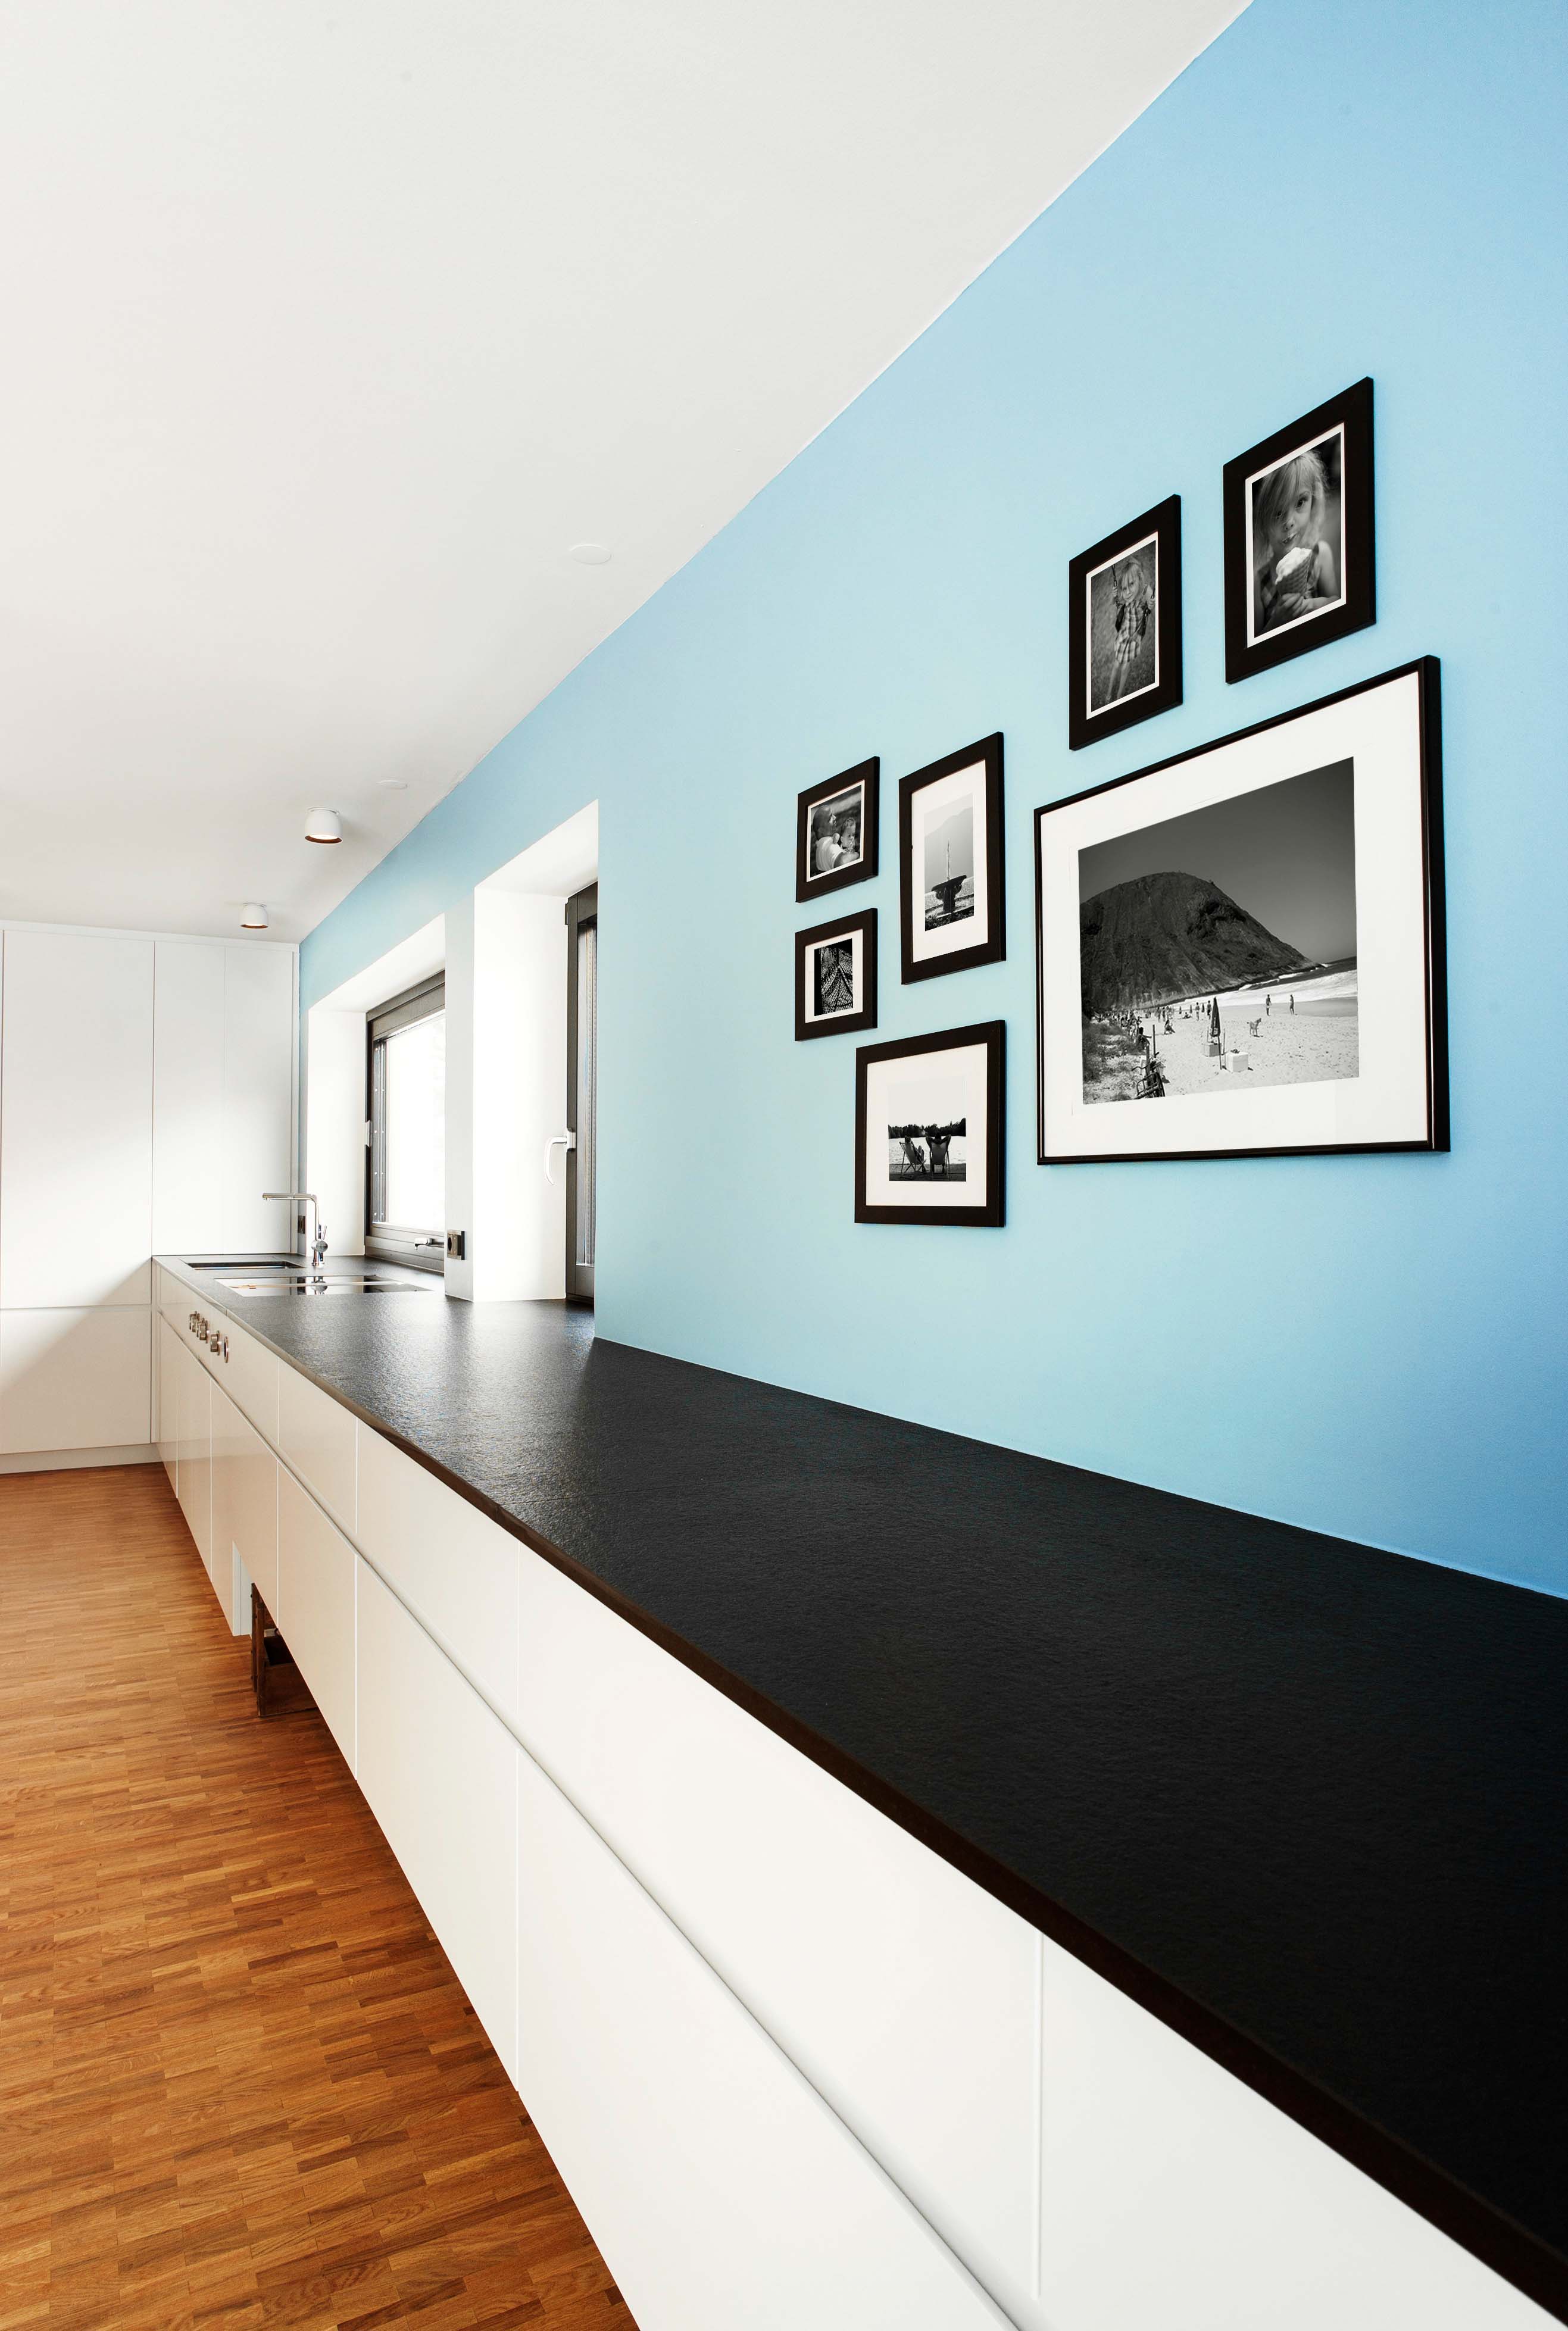 Lange, geradlinige Küchenzeile in weiß, grifflos und mit schwarzer Stein-Arbeitsfläche. Hellblaue Wand dahinter an der Bilder hängen.